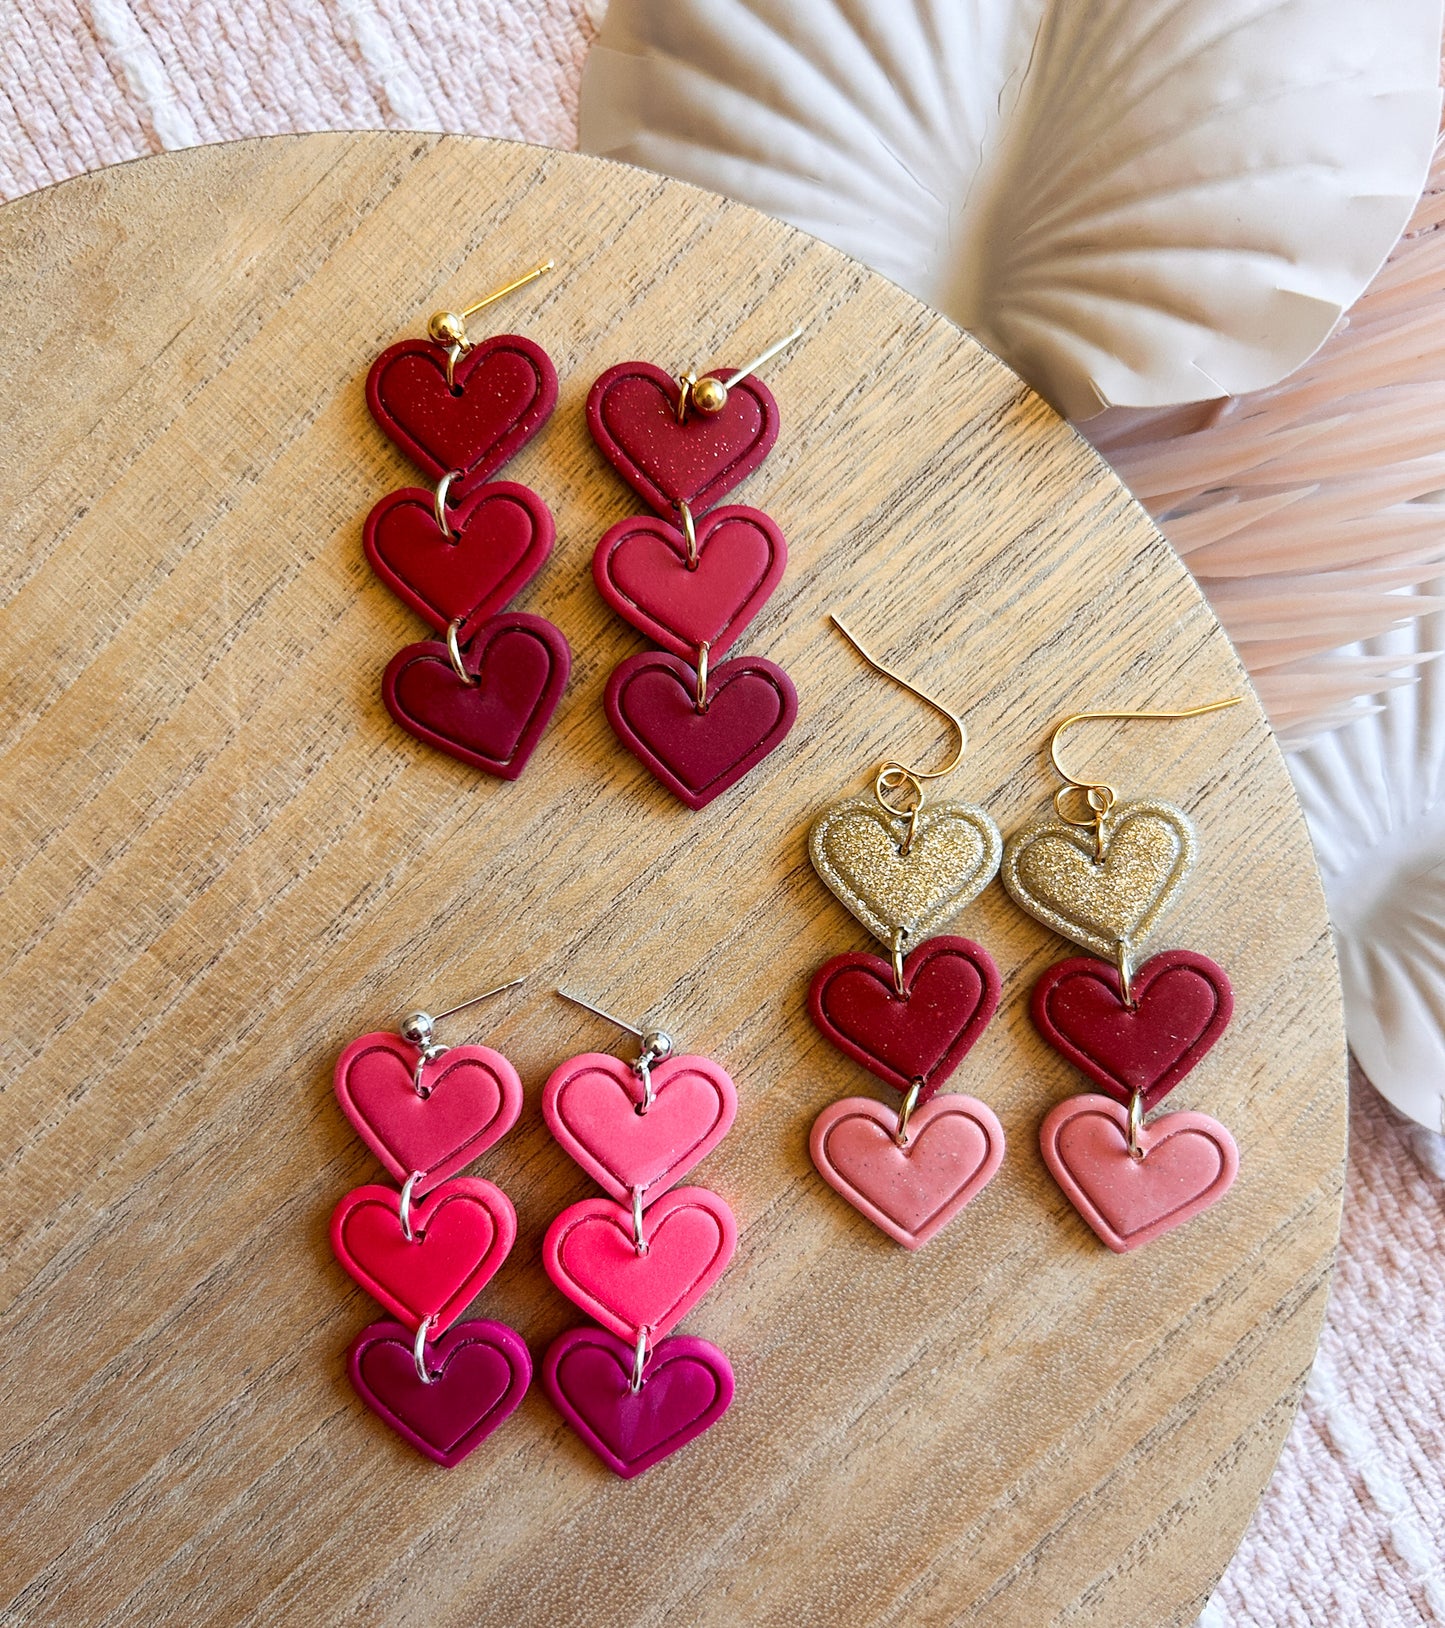 Hearts ~ Red Dangling Valentine Earrings for Pierced Ears : LILIEN